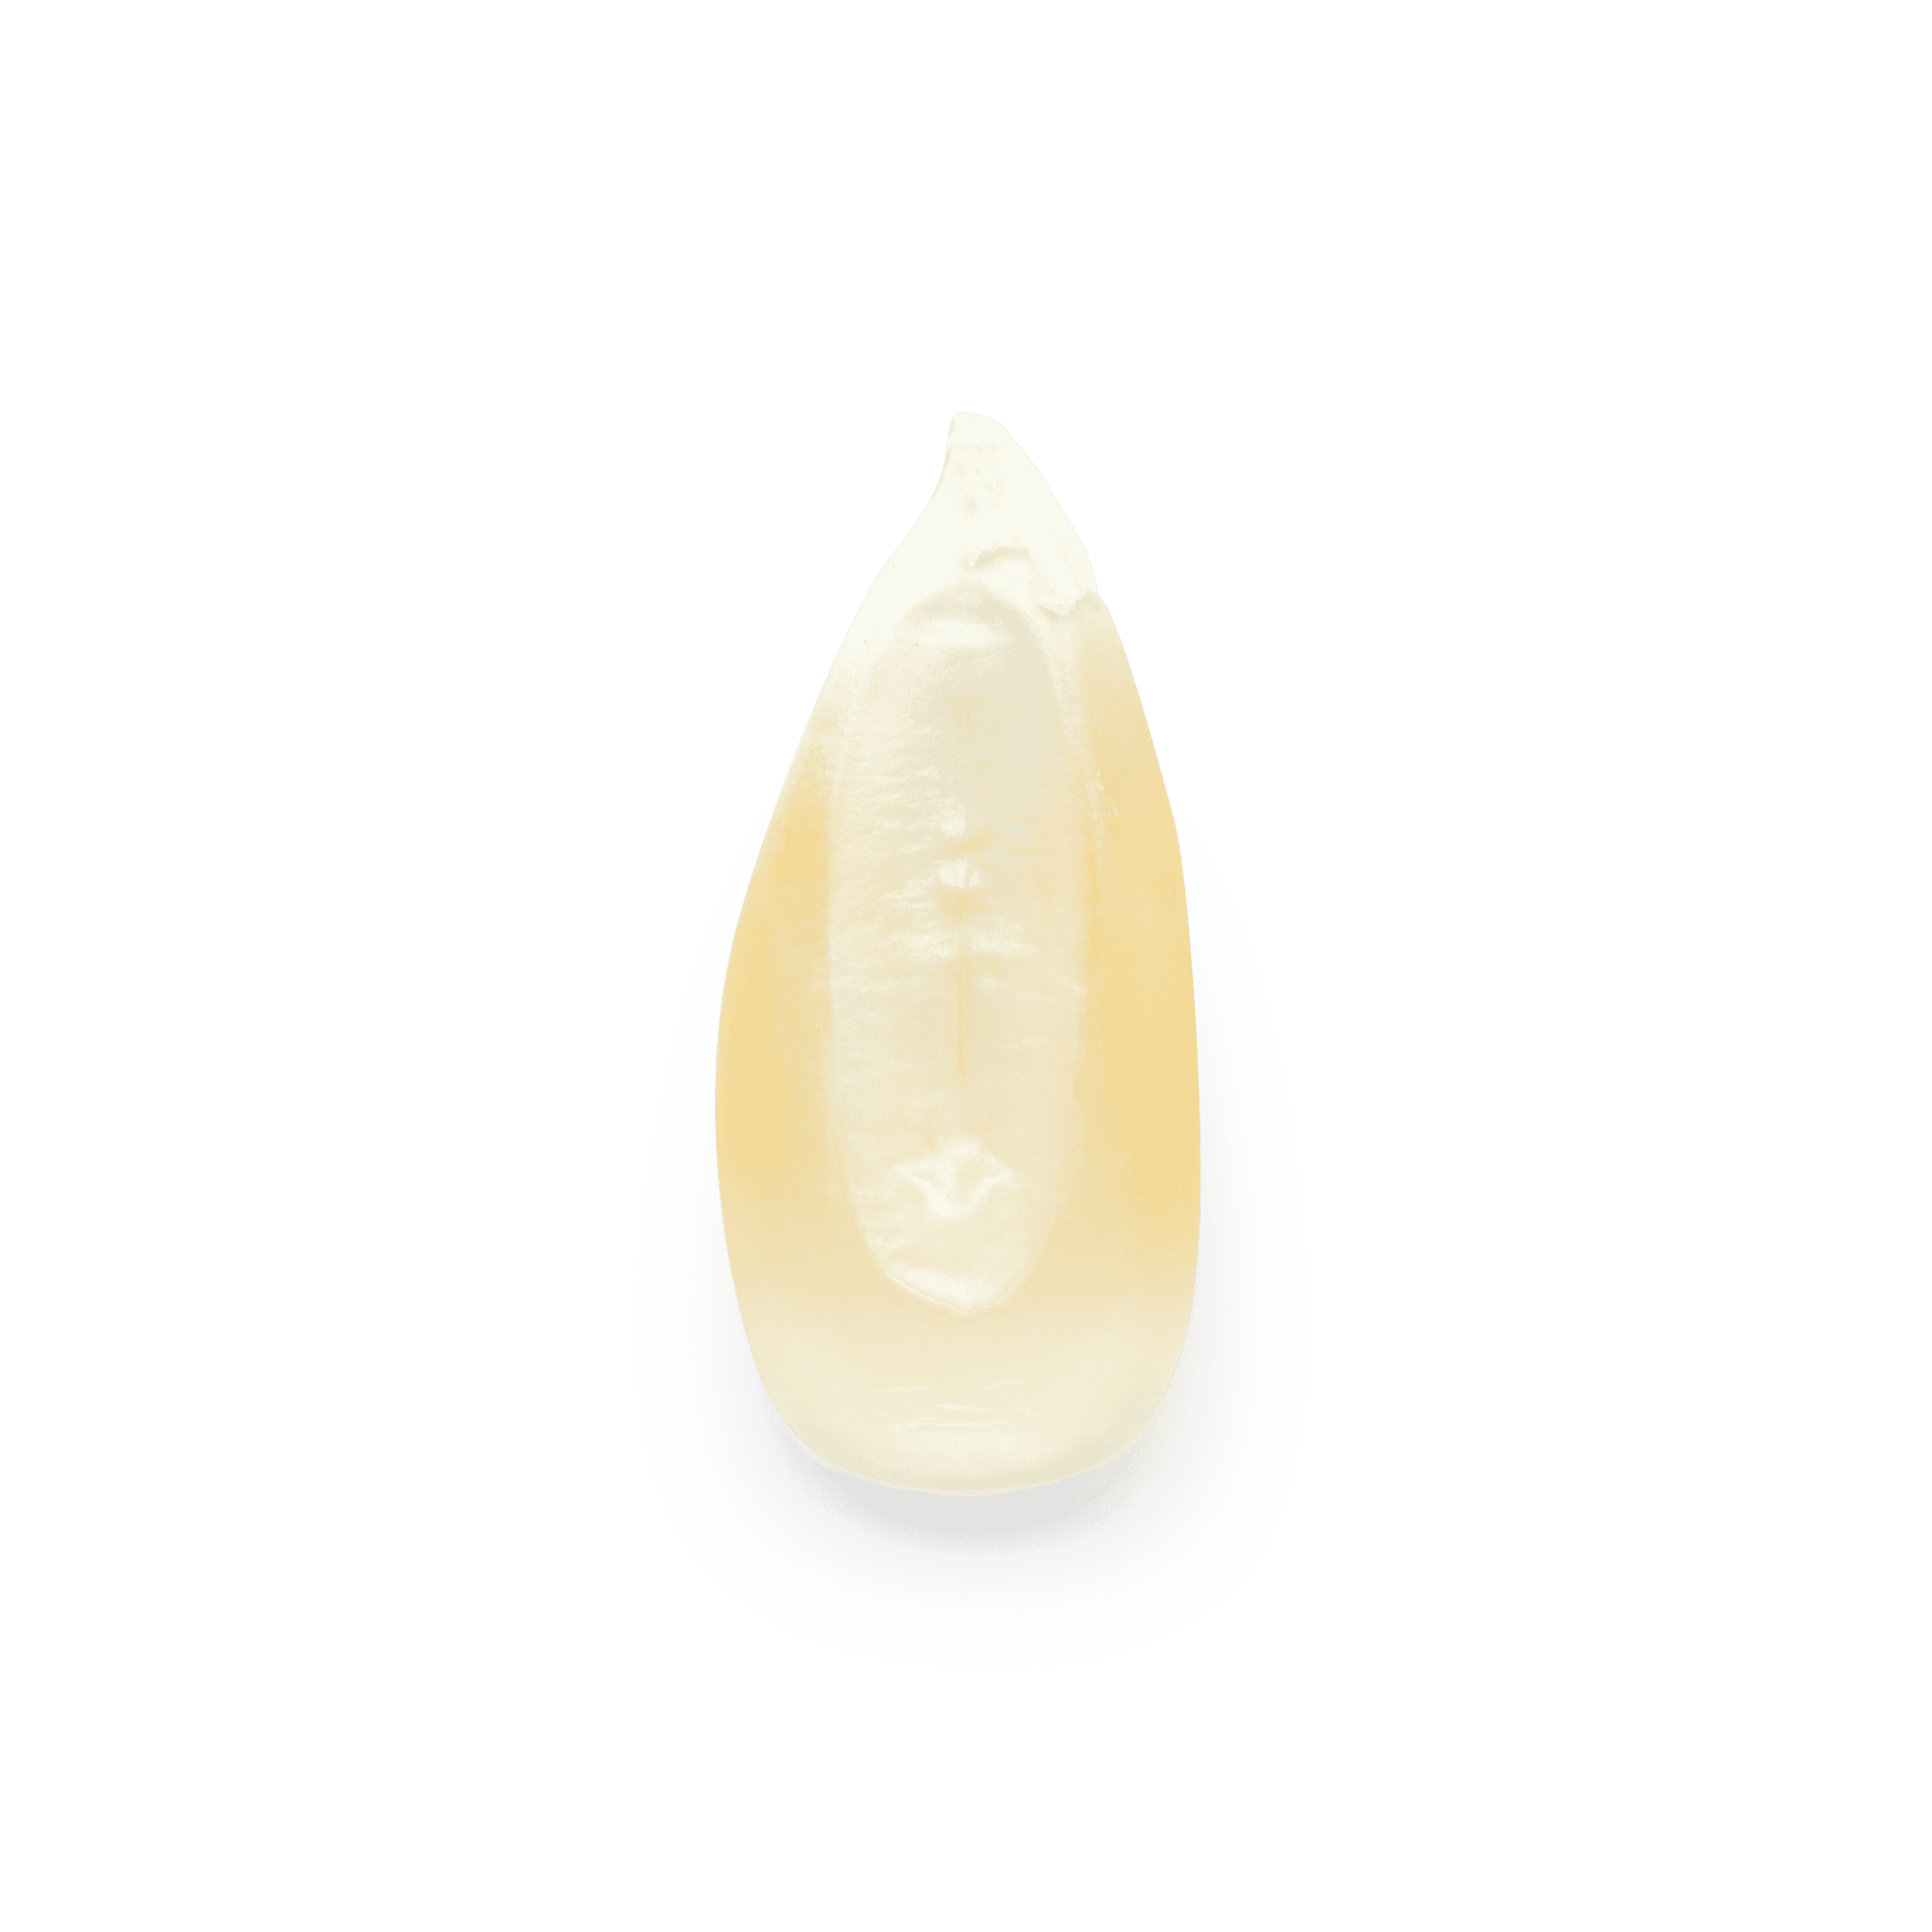 maíz criollo | Masienda Blanco Cónico de México | 55 lb